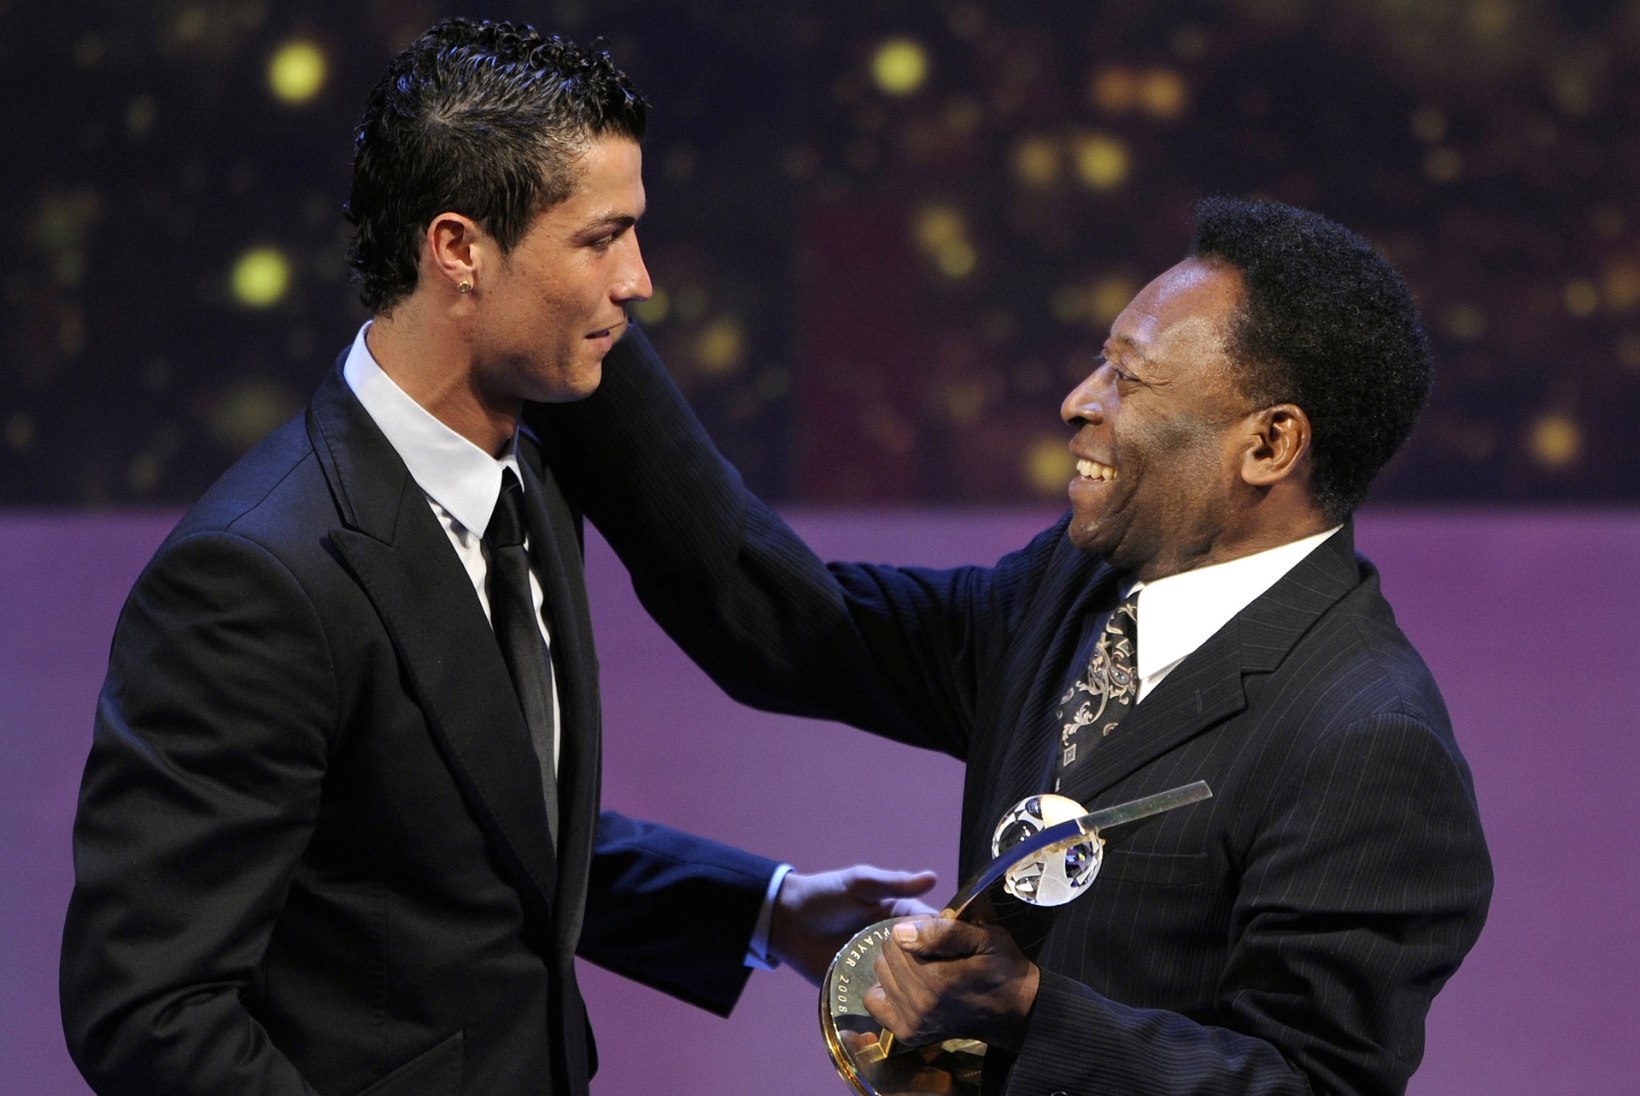 VIDEO: Kes on kuulsam jalgpallur - kas Cristiano Ronaldo või Pele?